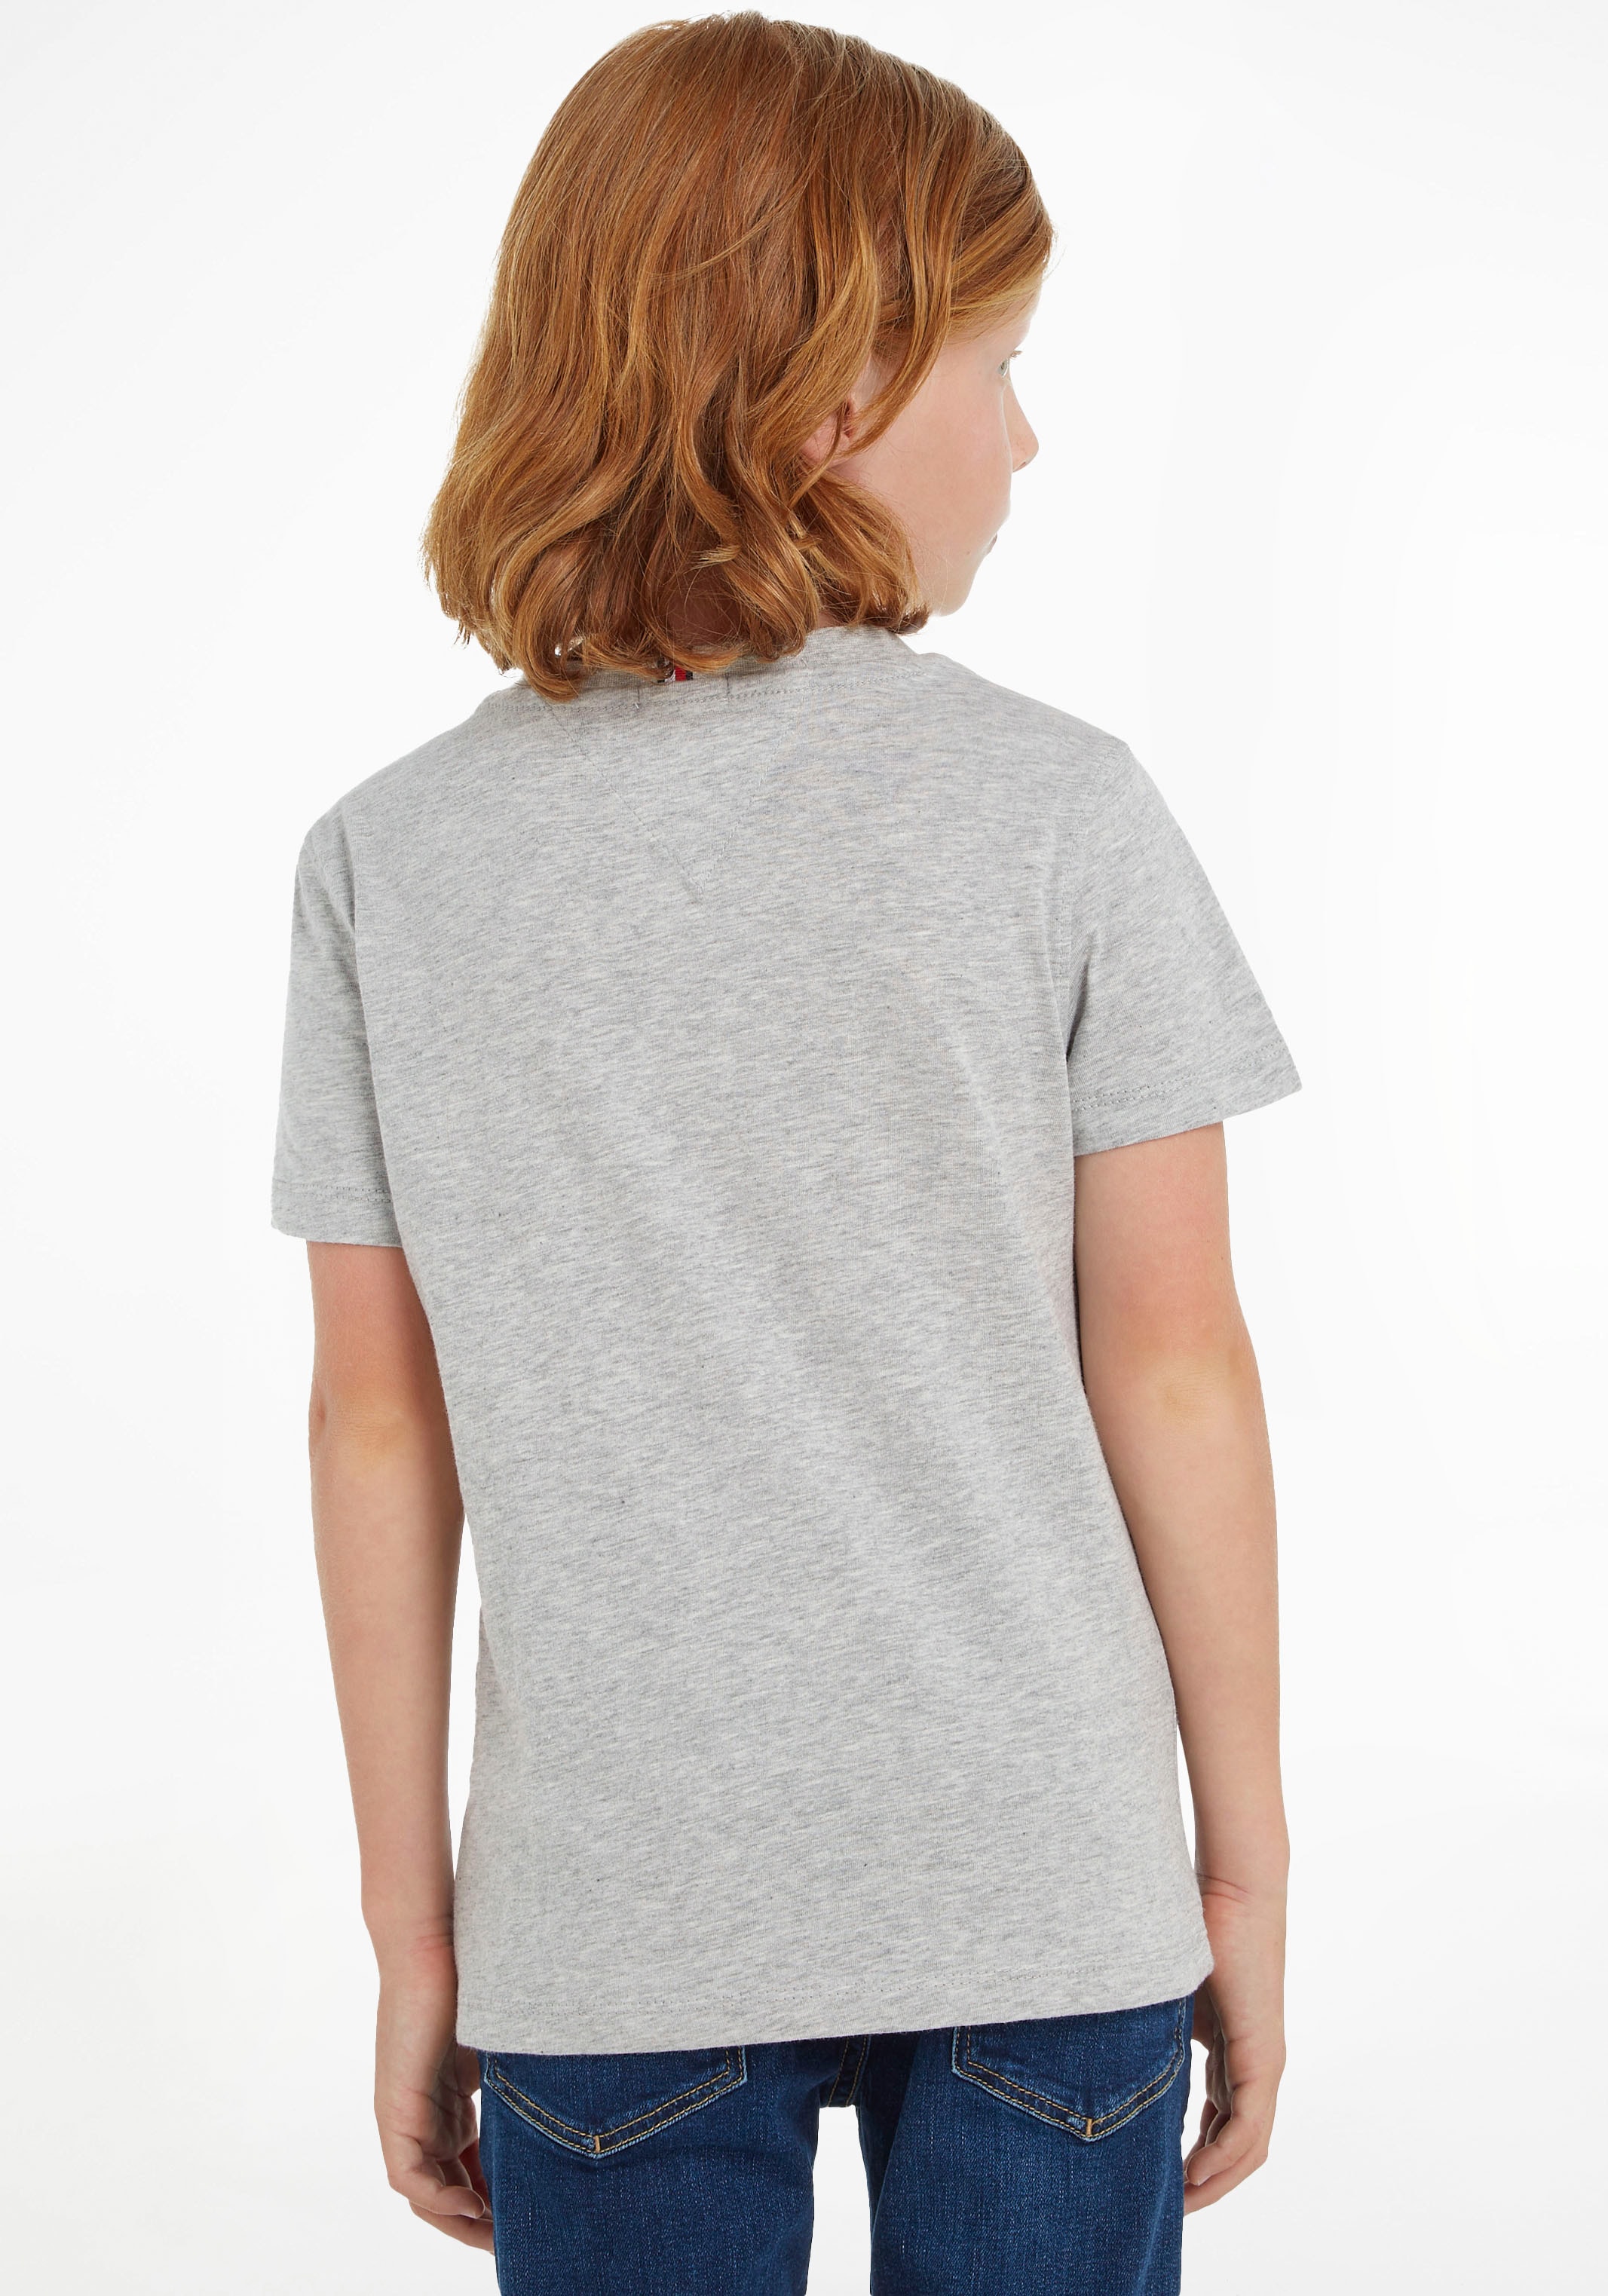 »ESSENTIAL Tommy Jungen T-Shirt Mädchen und für bestellen Hilfiger im TEE«, Online-Shop